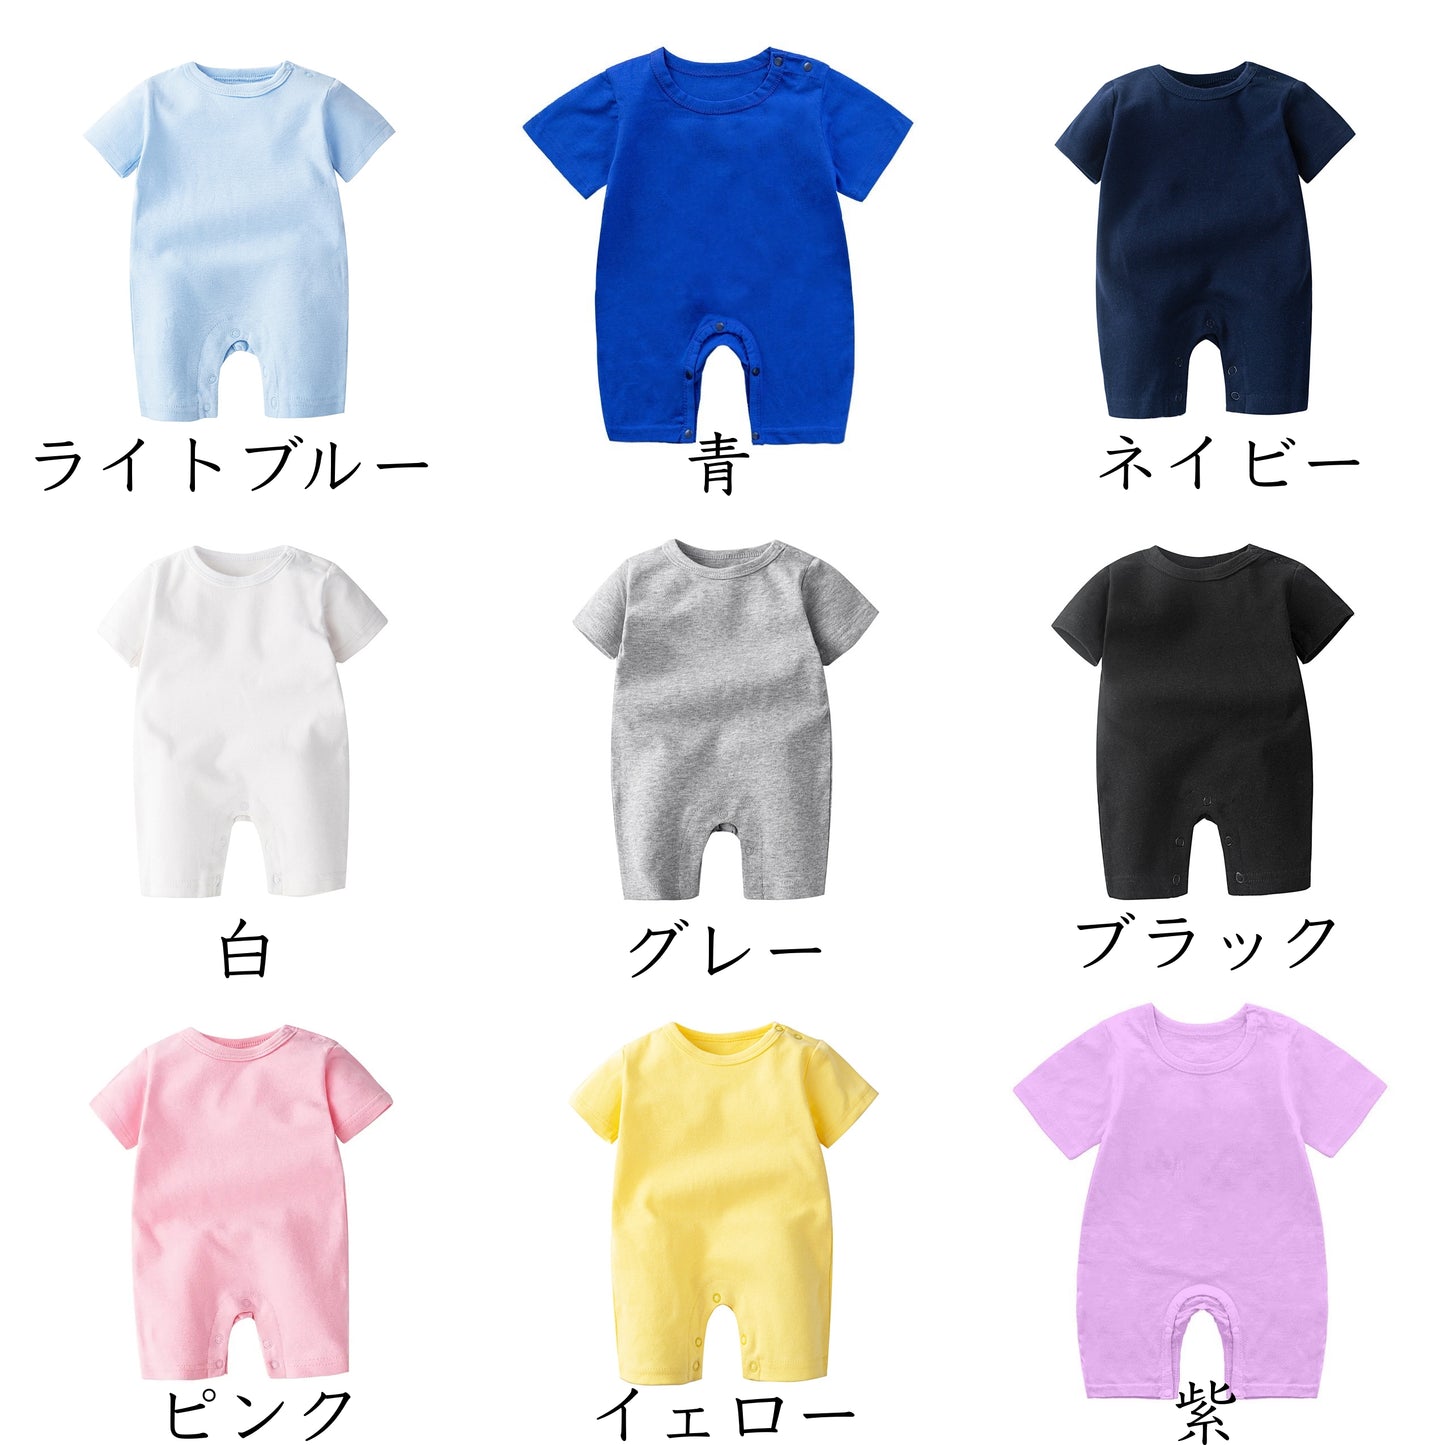 商店風名入れベビー服·ロンパース·9色